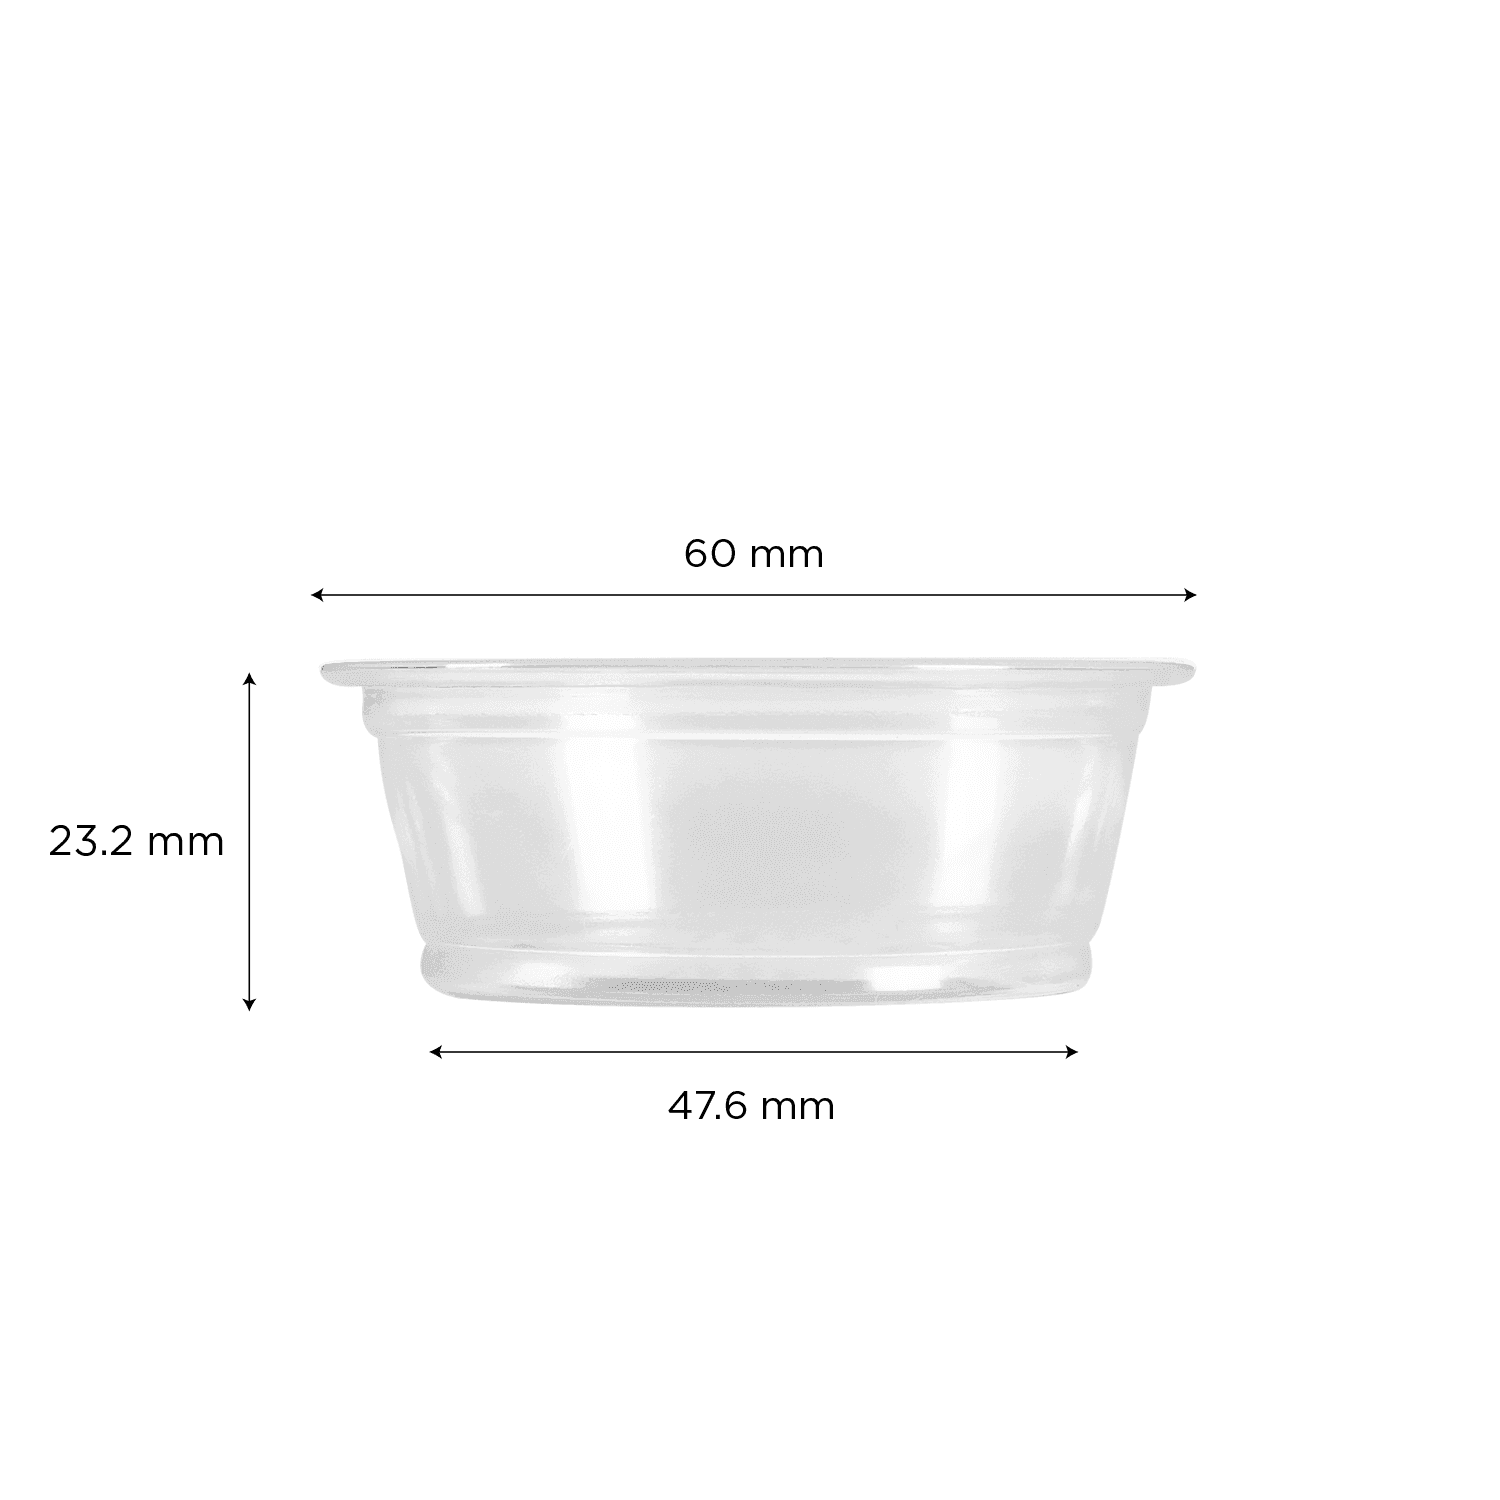 Karat 1.5 oz PP Plastic Portion Cups, Clear - 2,500 pcs